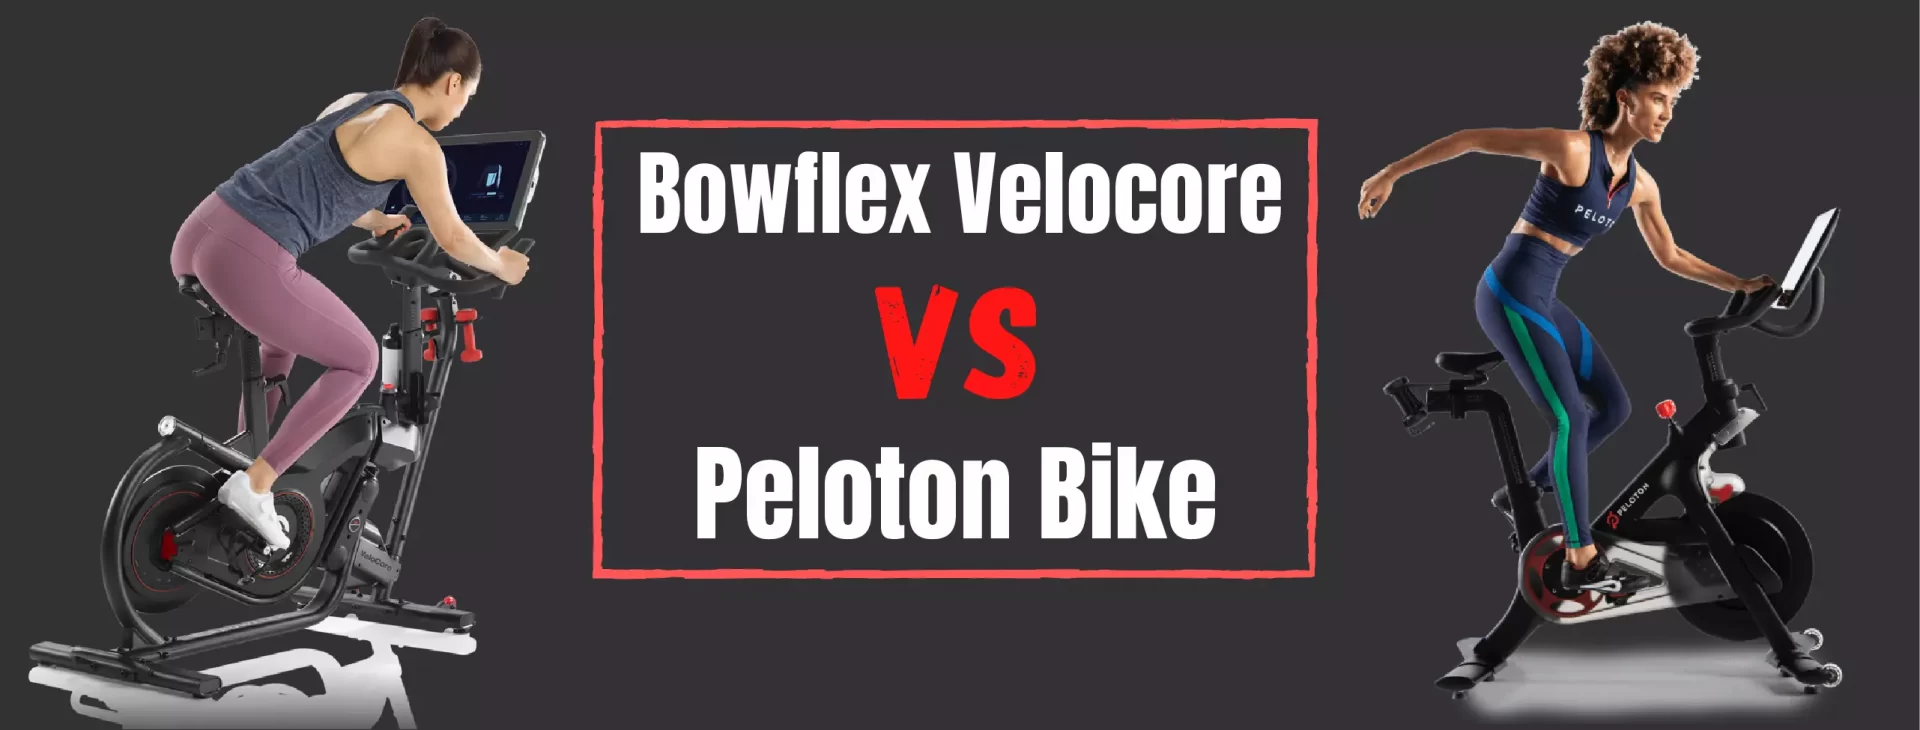 Bowflex Velocore Vs Peloton